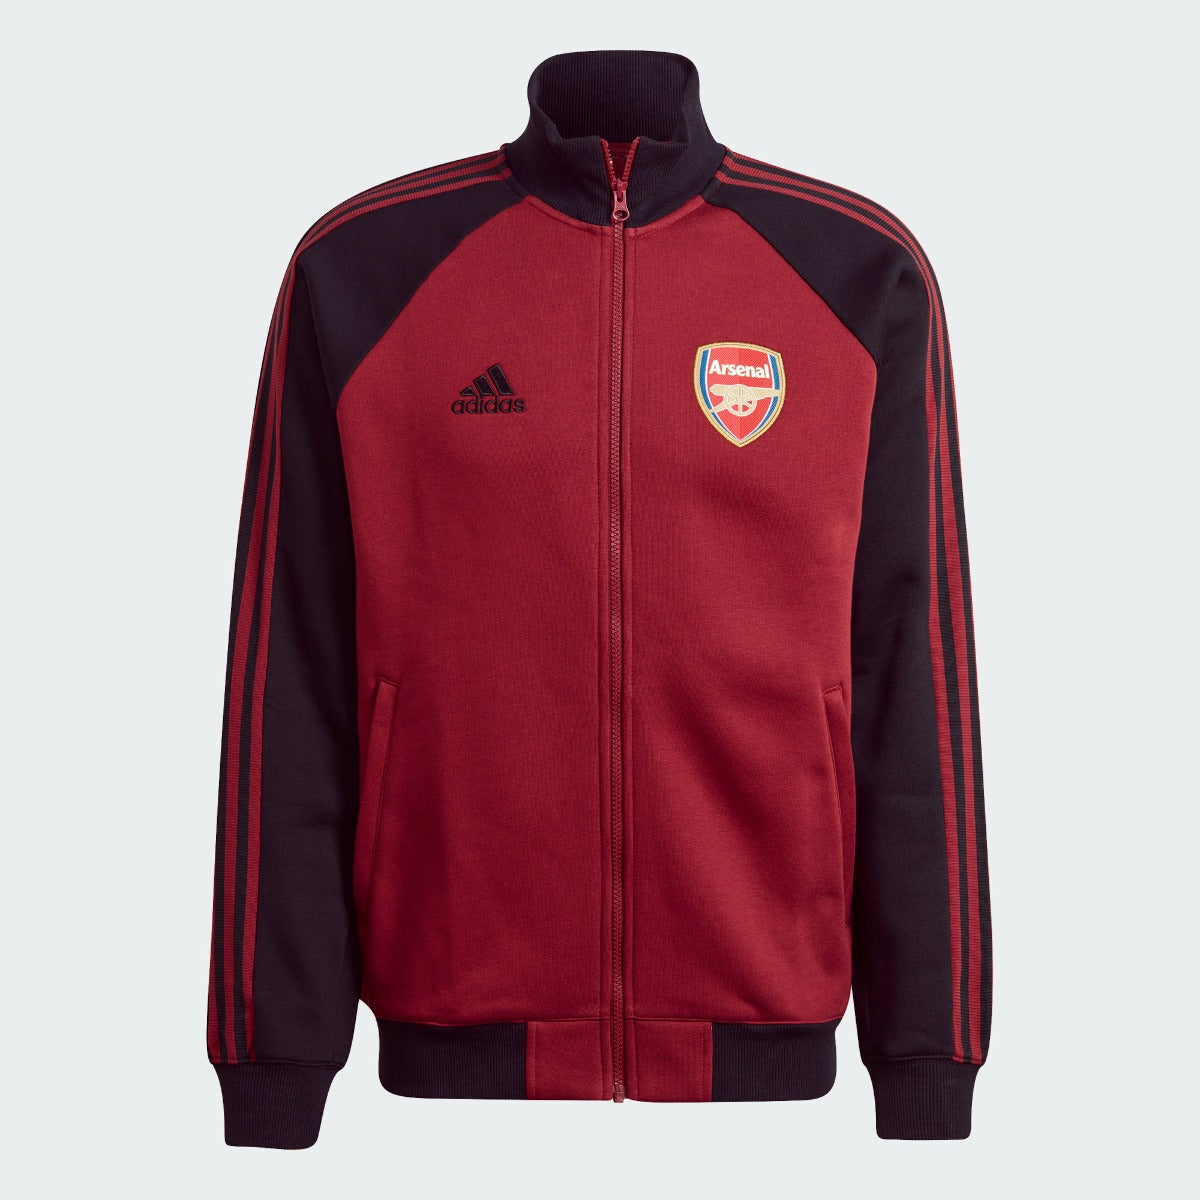 Adidas 2022 Arsenal Anthem Jacket - Noble Maroon-Black (Front)